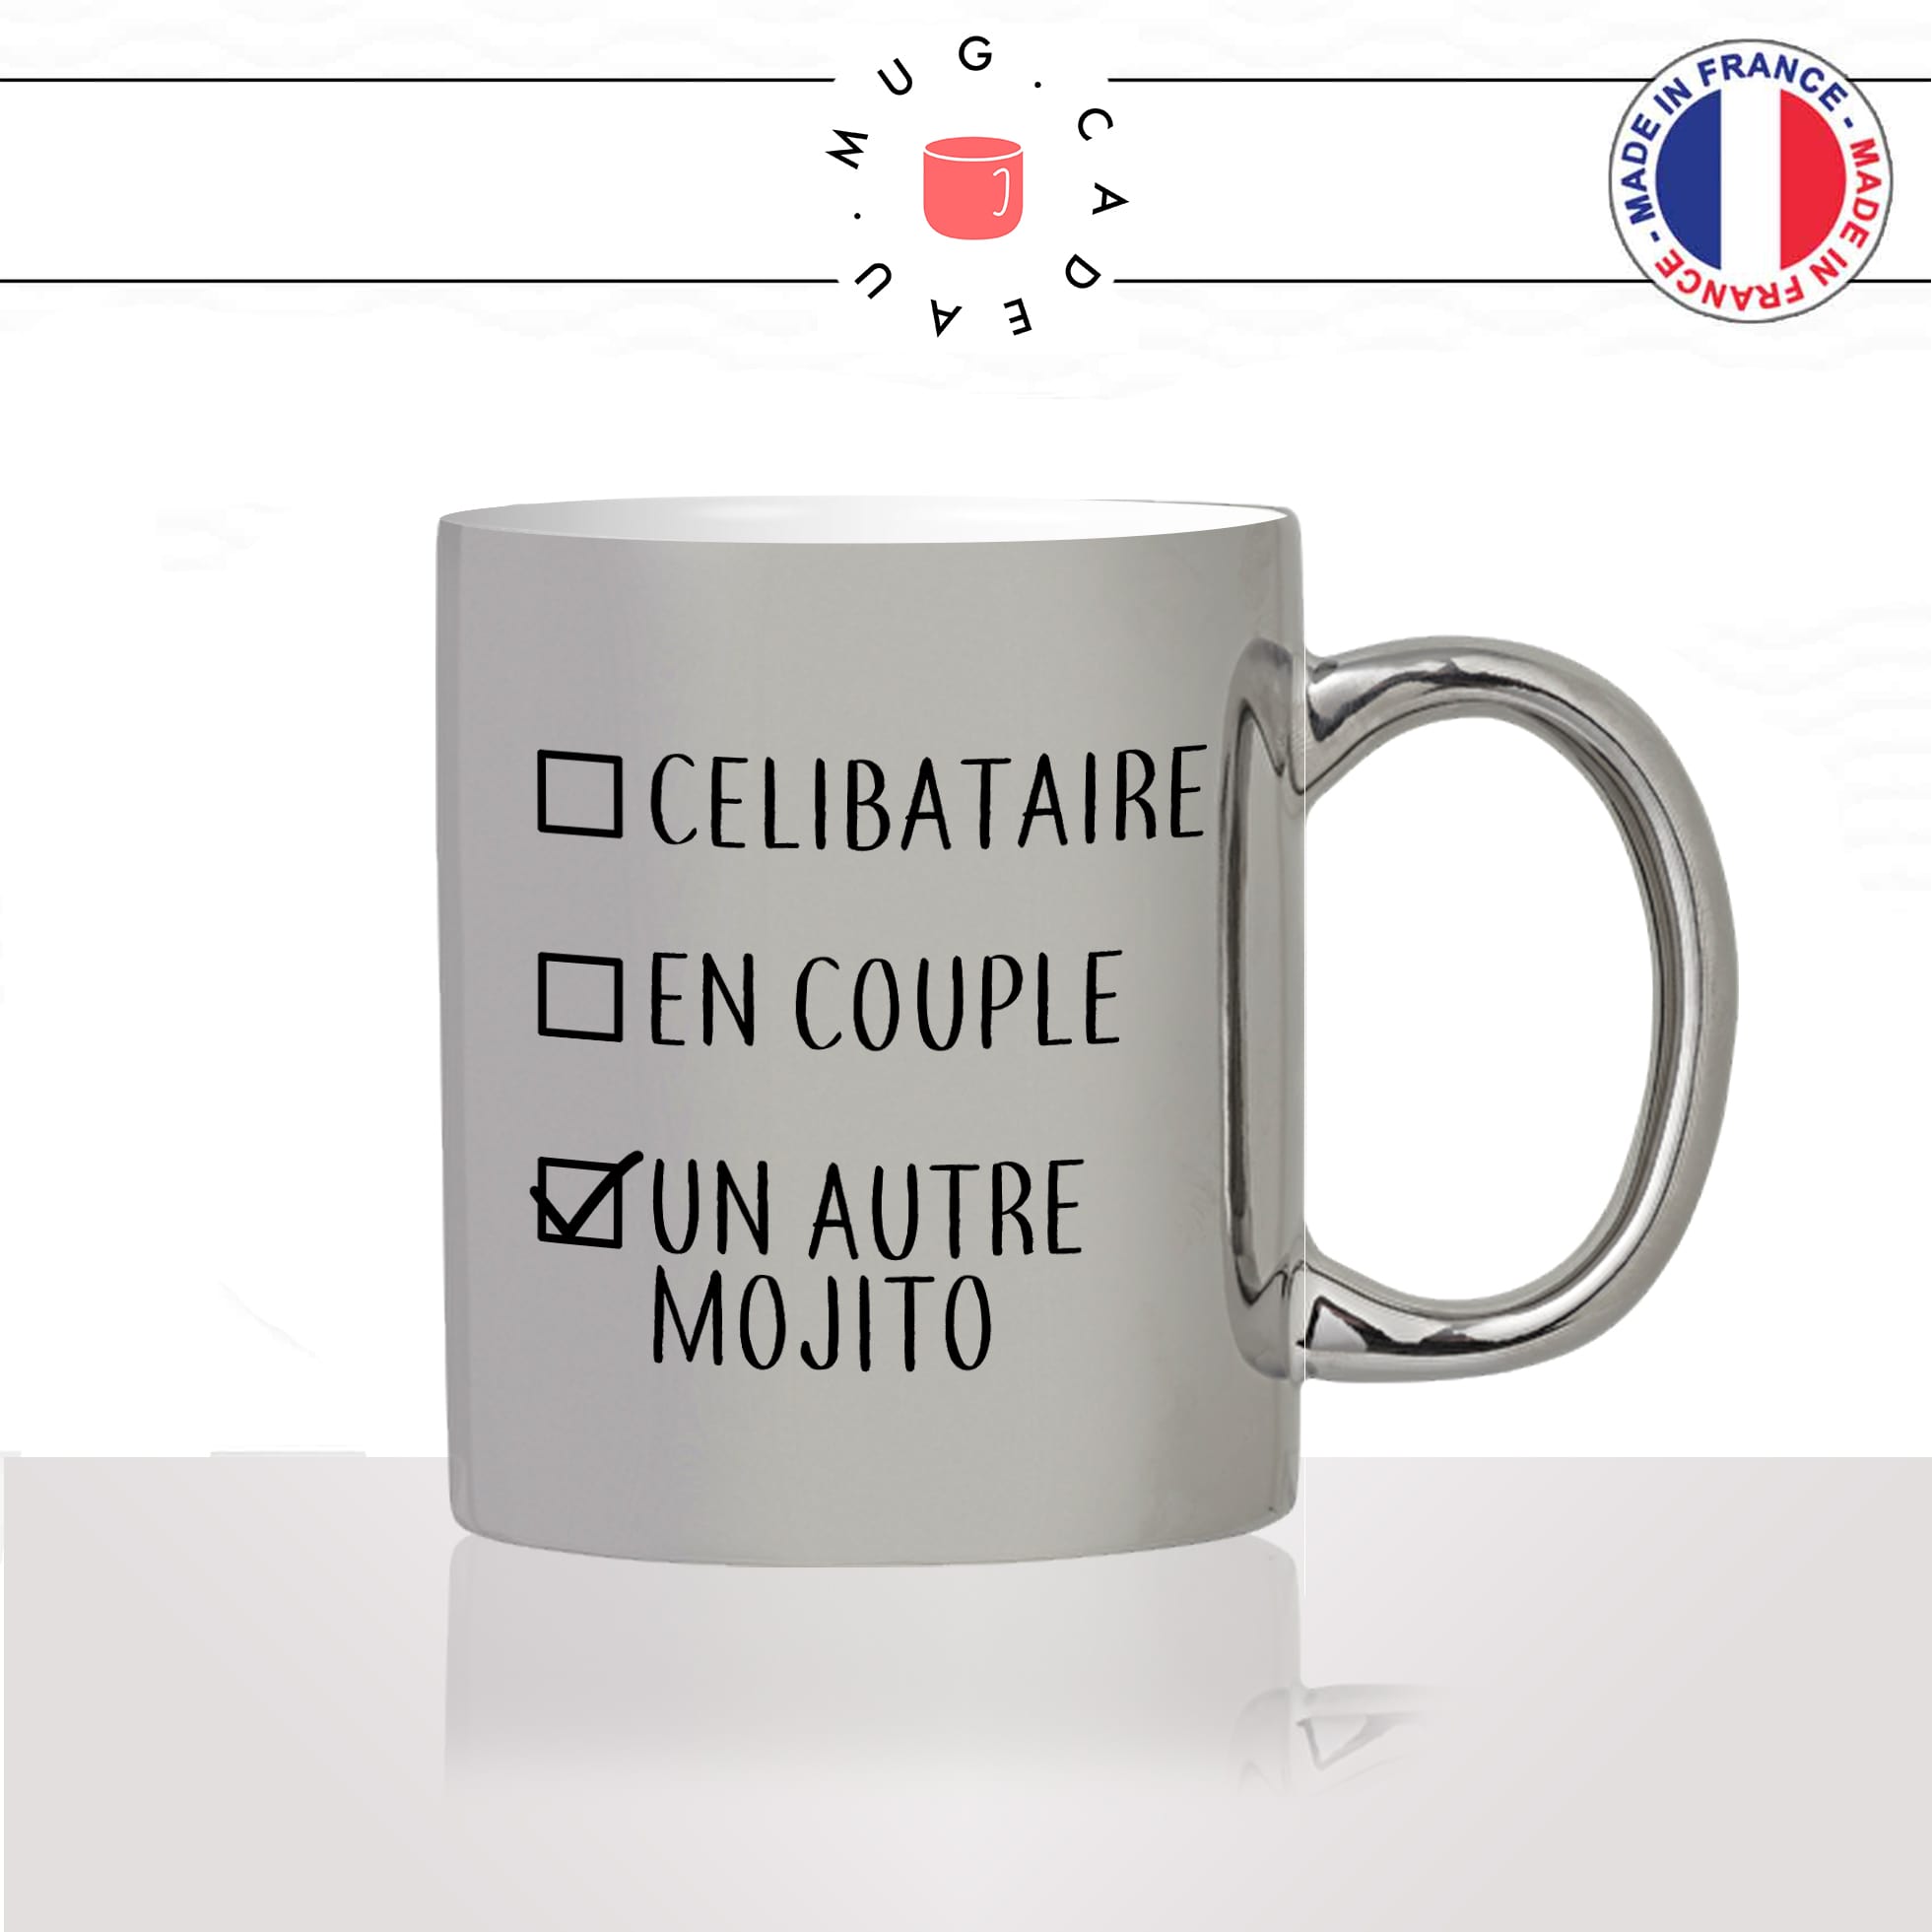 mug-tasse-argent-silver-gris-célibataire-en-couple-mojito-copines-cocktail-soirée-fille-homme-femme-humour-cool-idée-cadeau-fun-drole-café-thé2-min